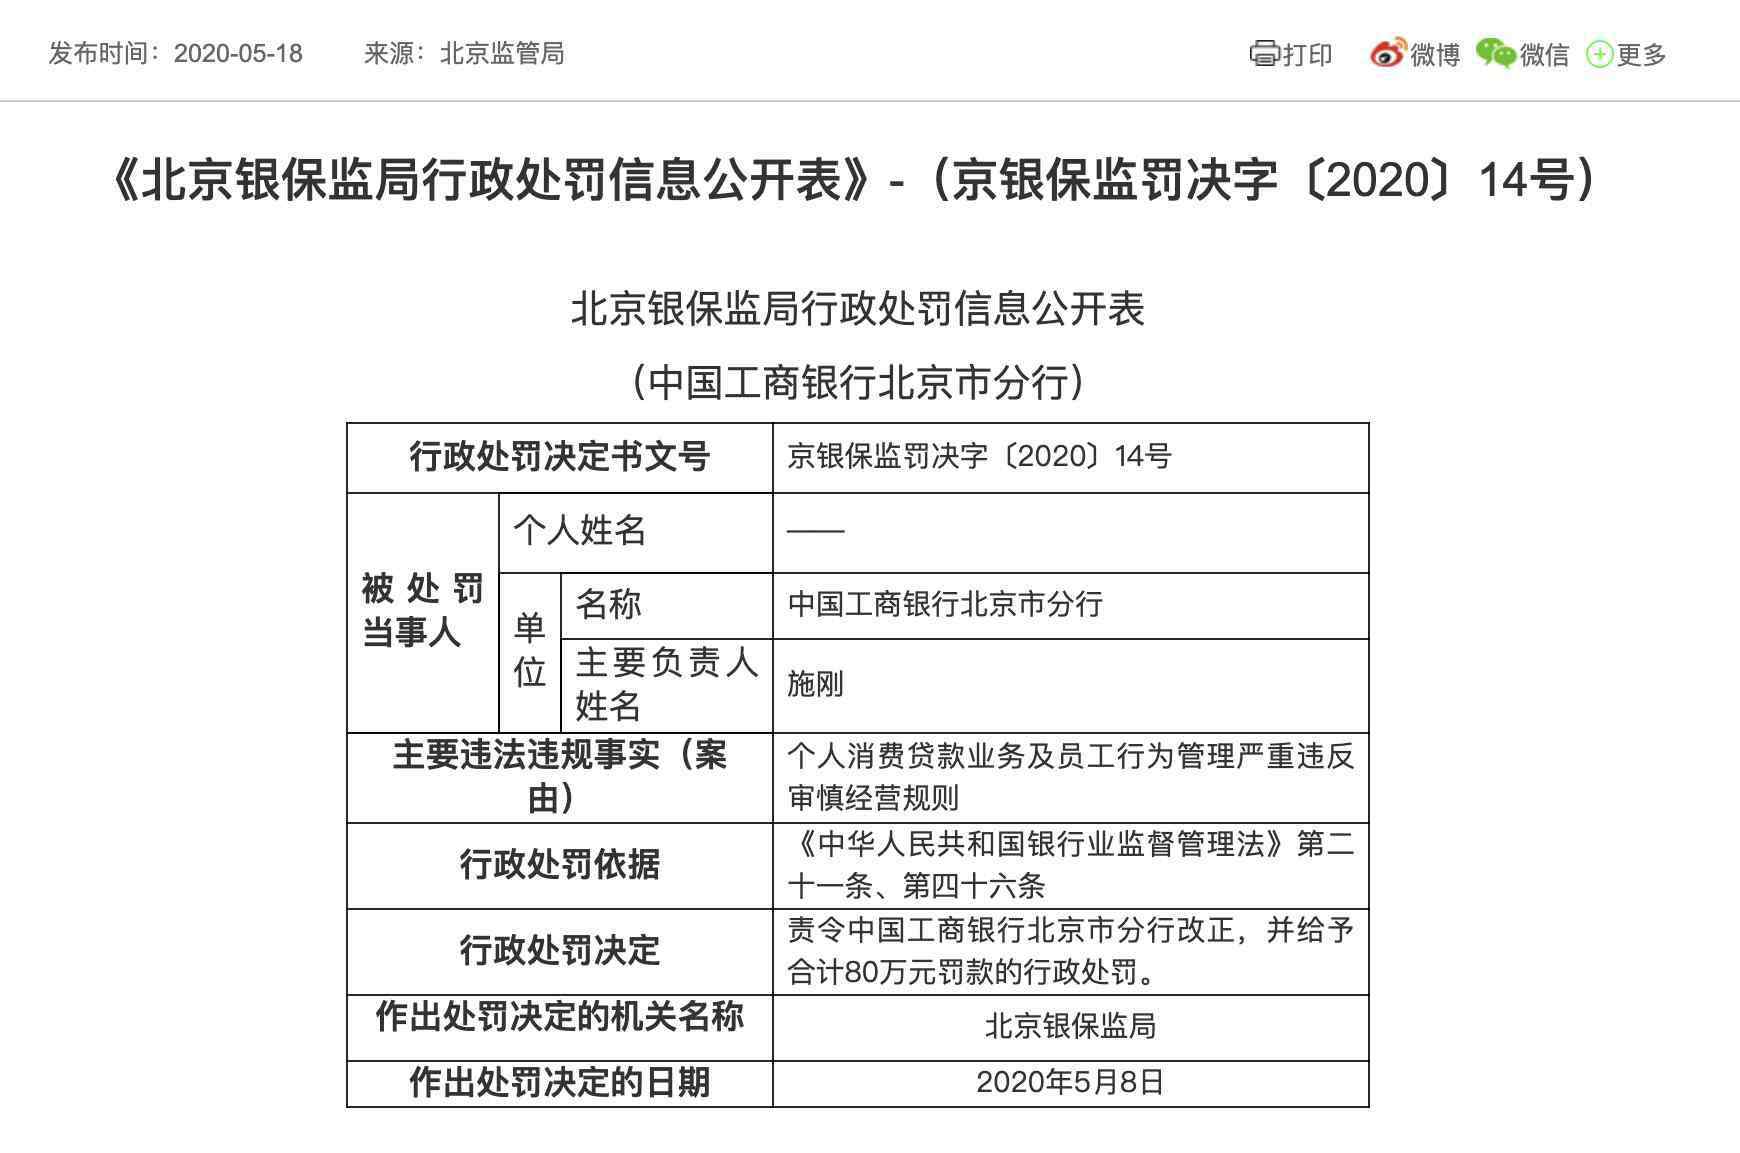 工行个人消费贷款 违规发放个人消费贷款 中国工商银行北京市分行遭罚80万